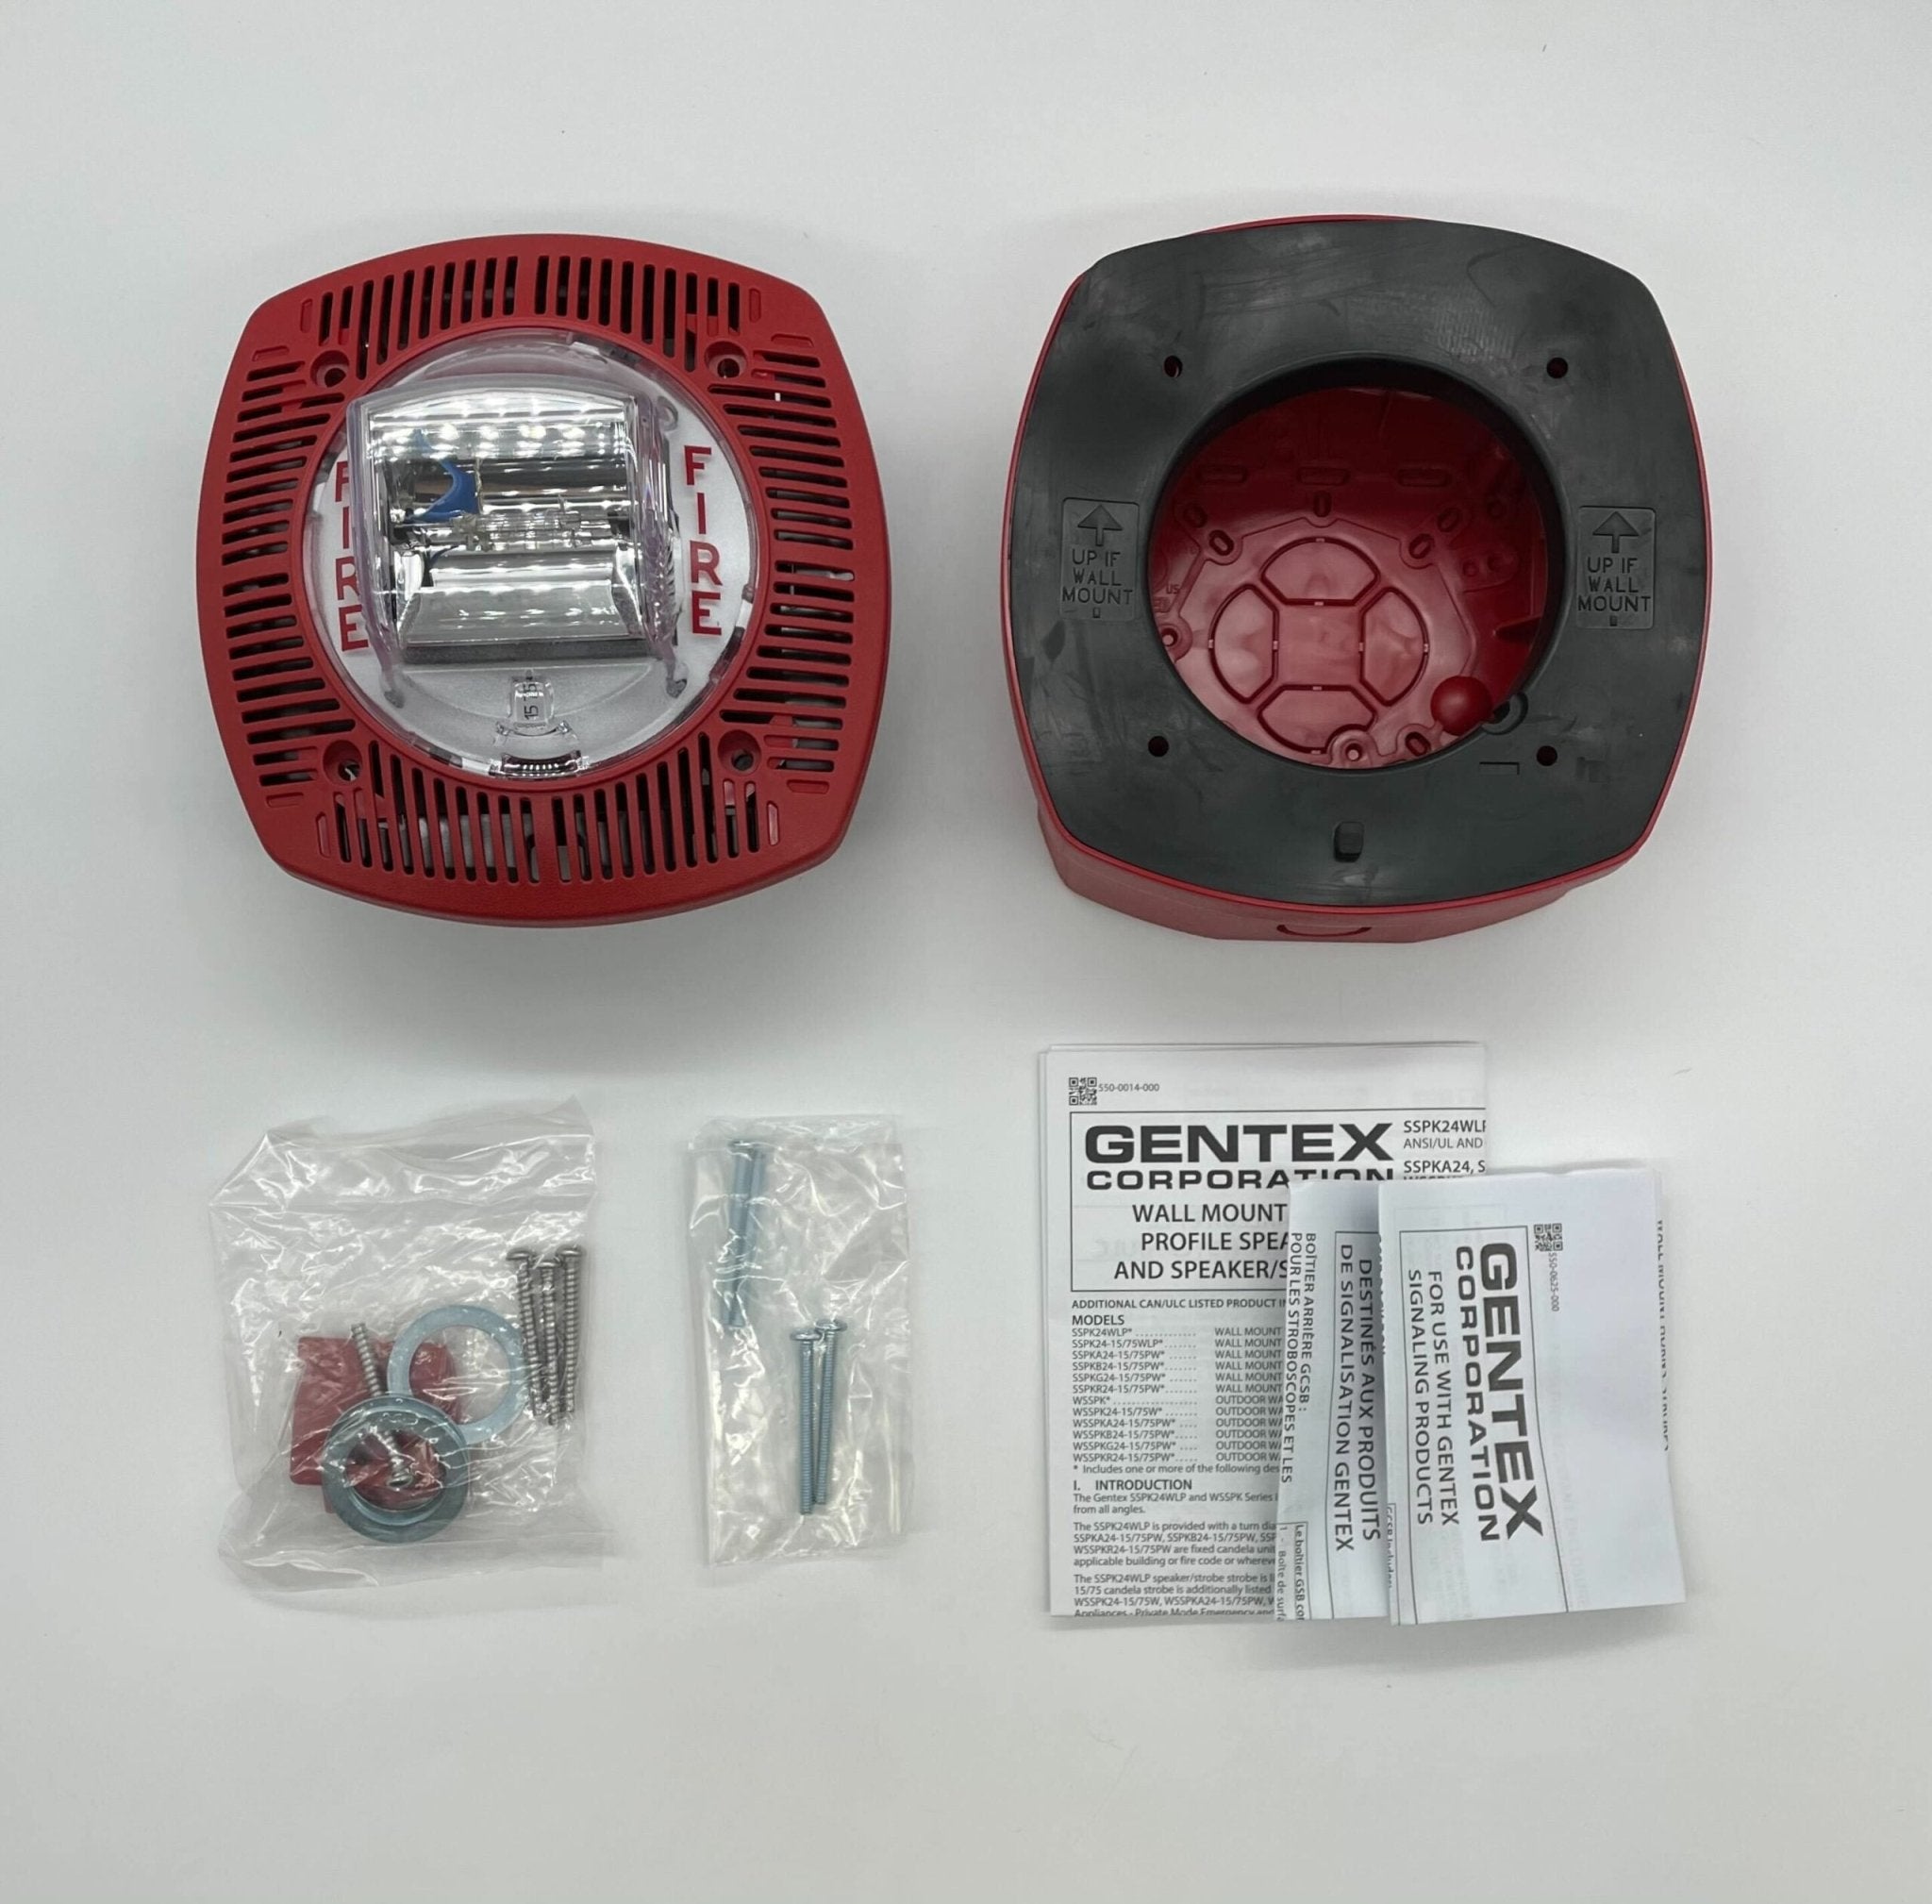 Gentex WSSPK24-15/75WR Outdoor Speaker/Strobe - The Fire Alarm Supplier